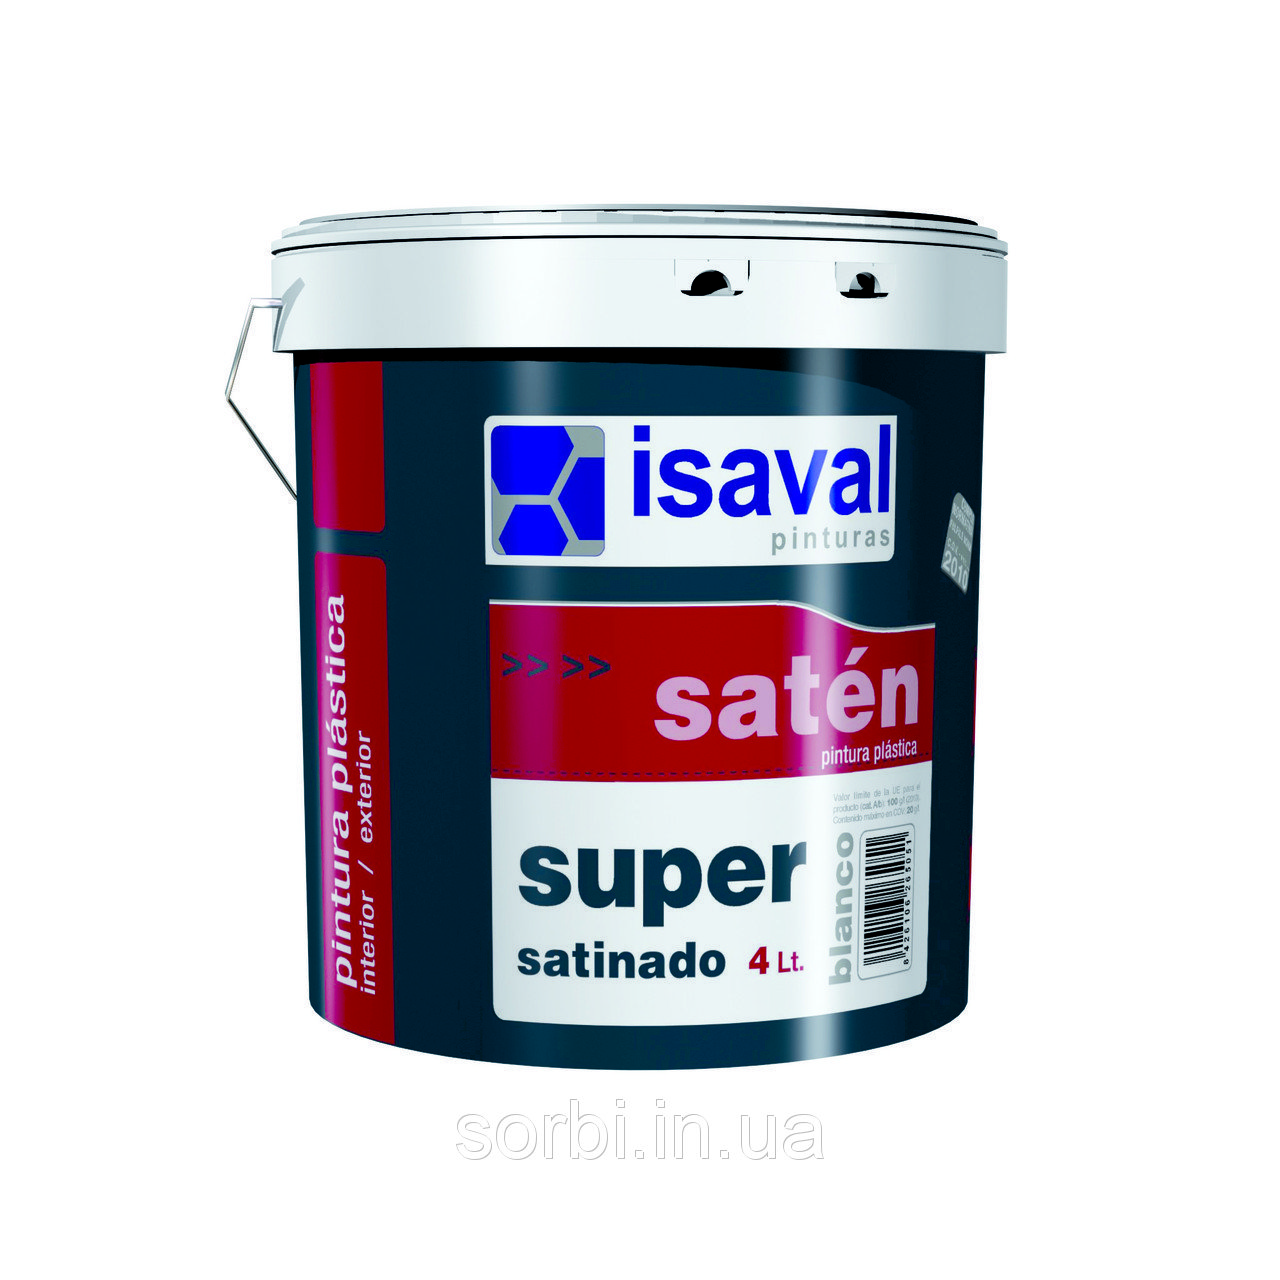 Акриловая краска для обоев и рельефных поверхностей Сатинадо Супер, с шелковистым блеском ISAVAL 1л до 15м2